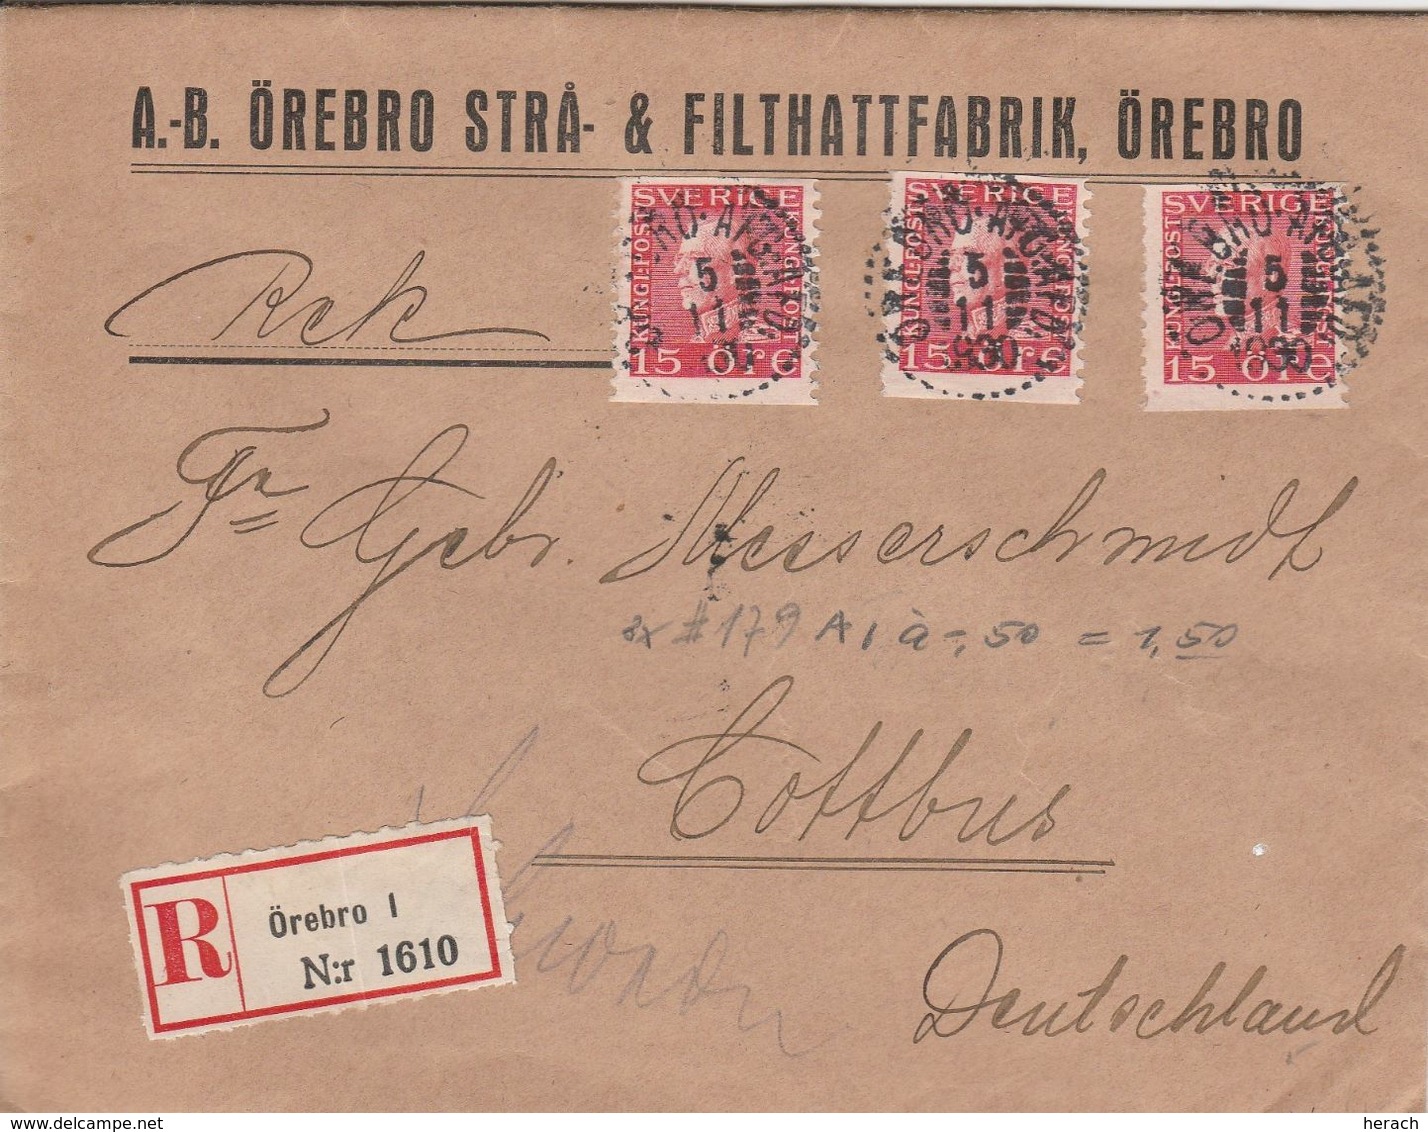 Suède Lettre Censurée Örebro Pour L'Allemagne 1930 - 1920-1936 Franqueo I